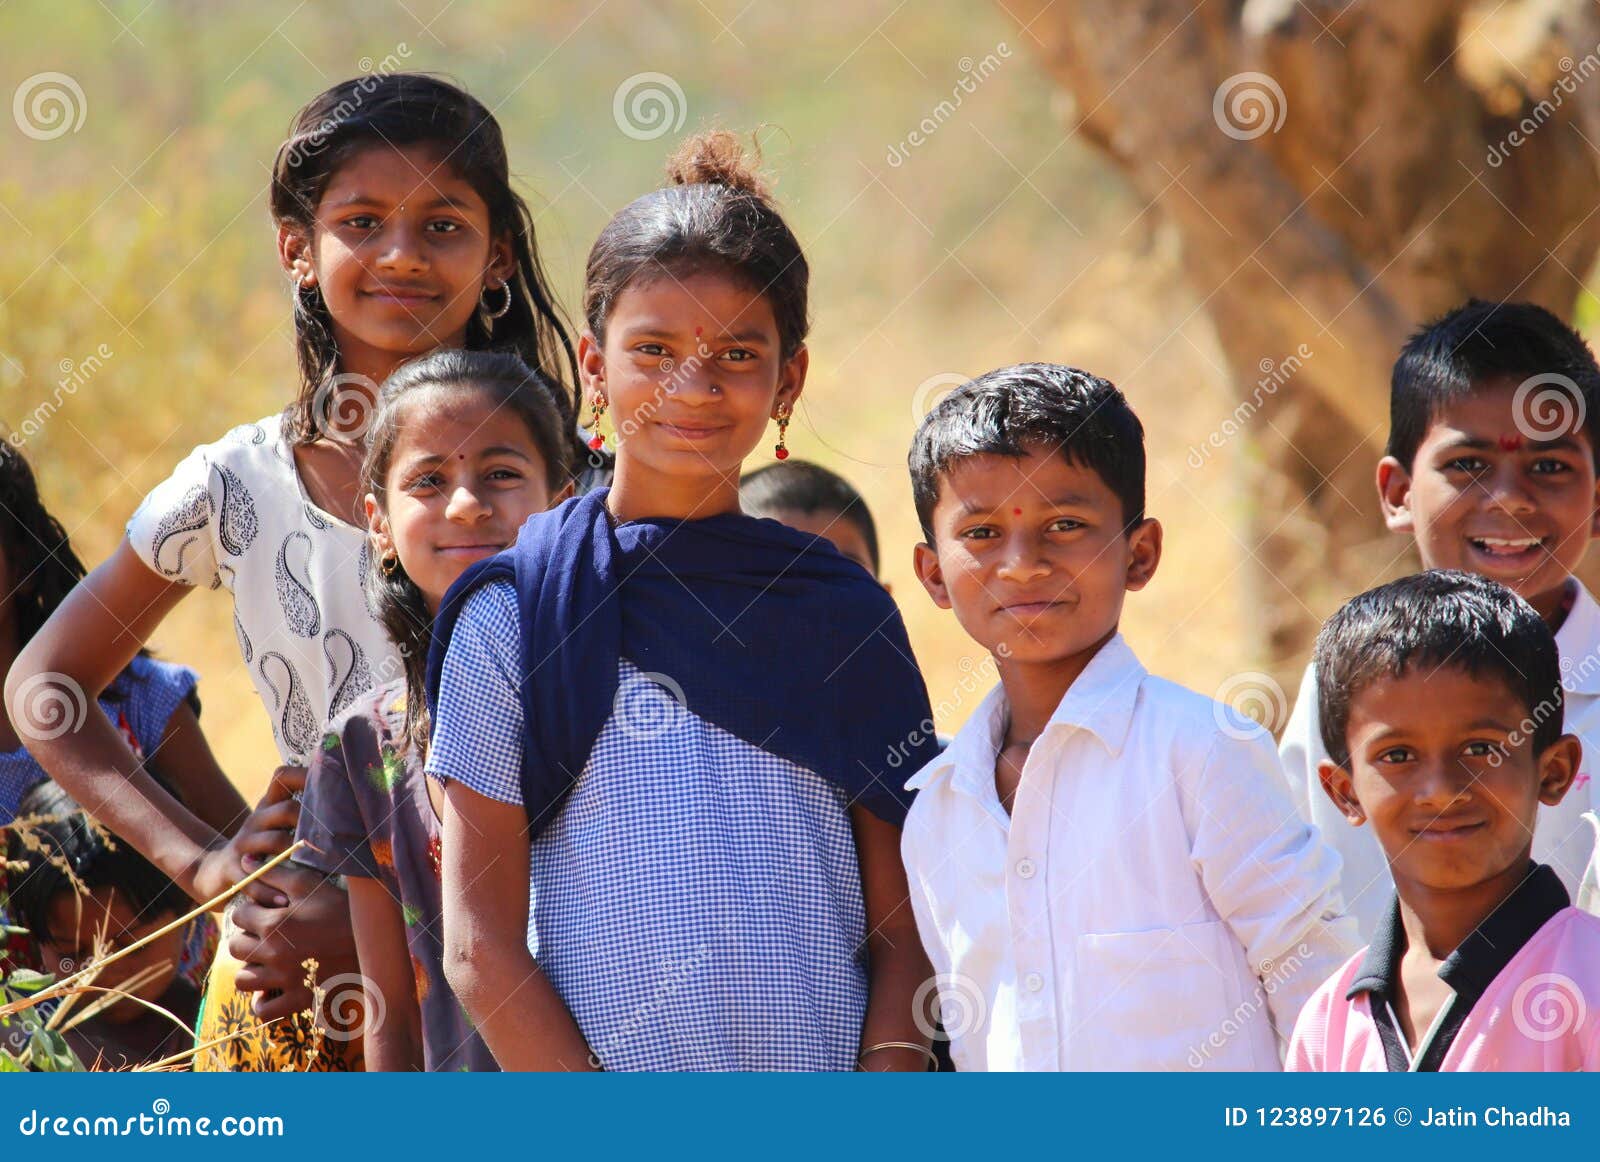 在村庄附近教育去的可怜的孩子在浦那，印度. 在村庄教育在浦那，印度附近的去的可怜的孩子摆在和照相机的微笑的infront